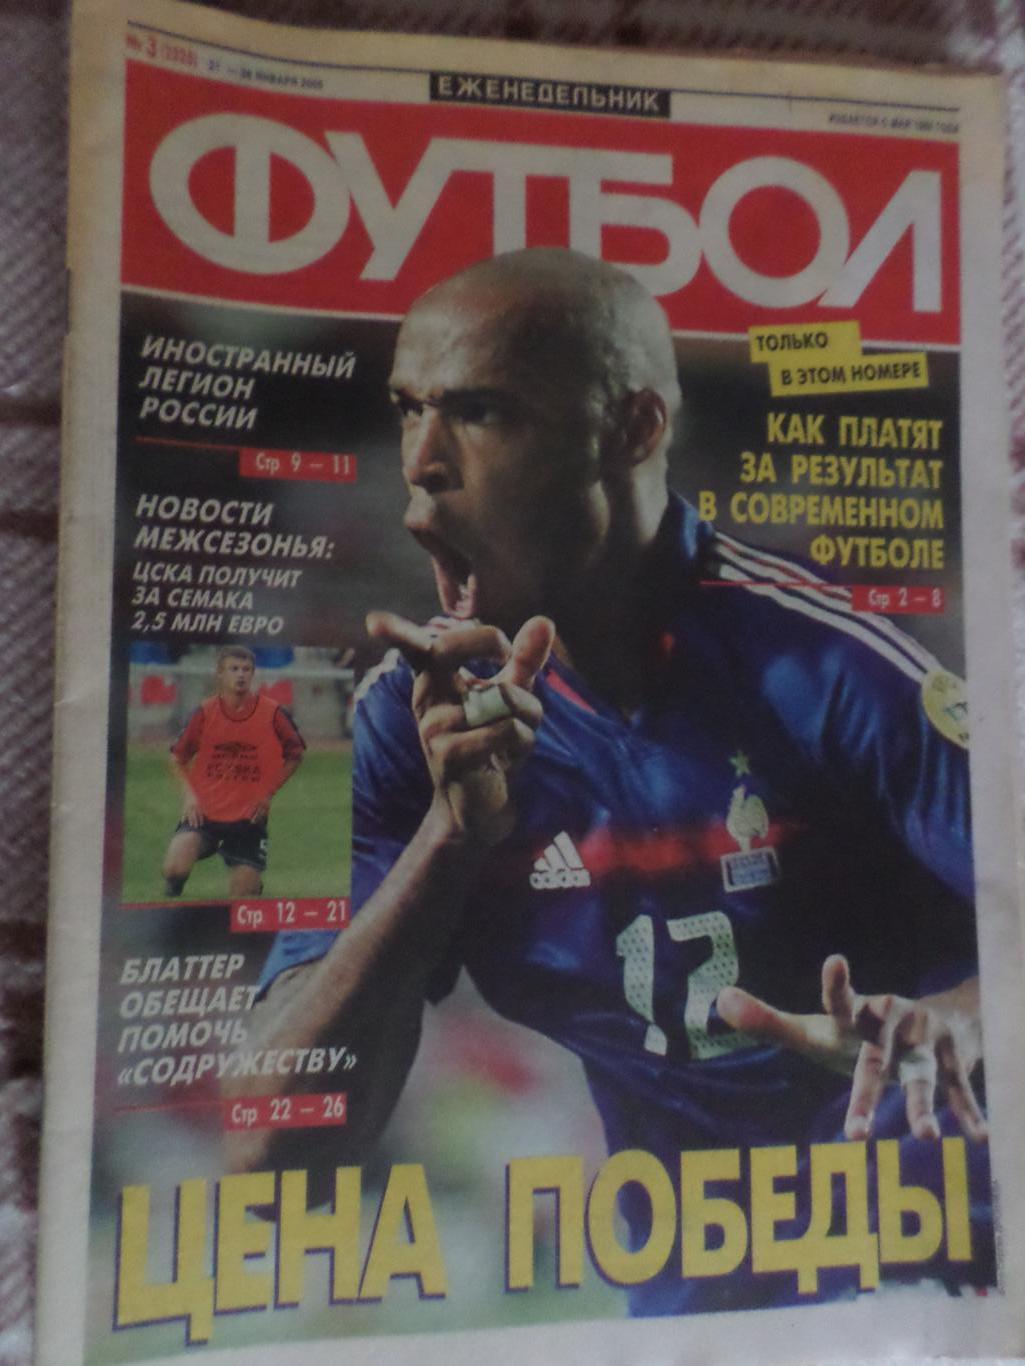 Еженедельник Футбол ( Москва) номер 3, 2005 г